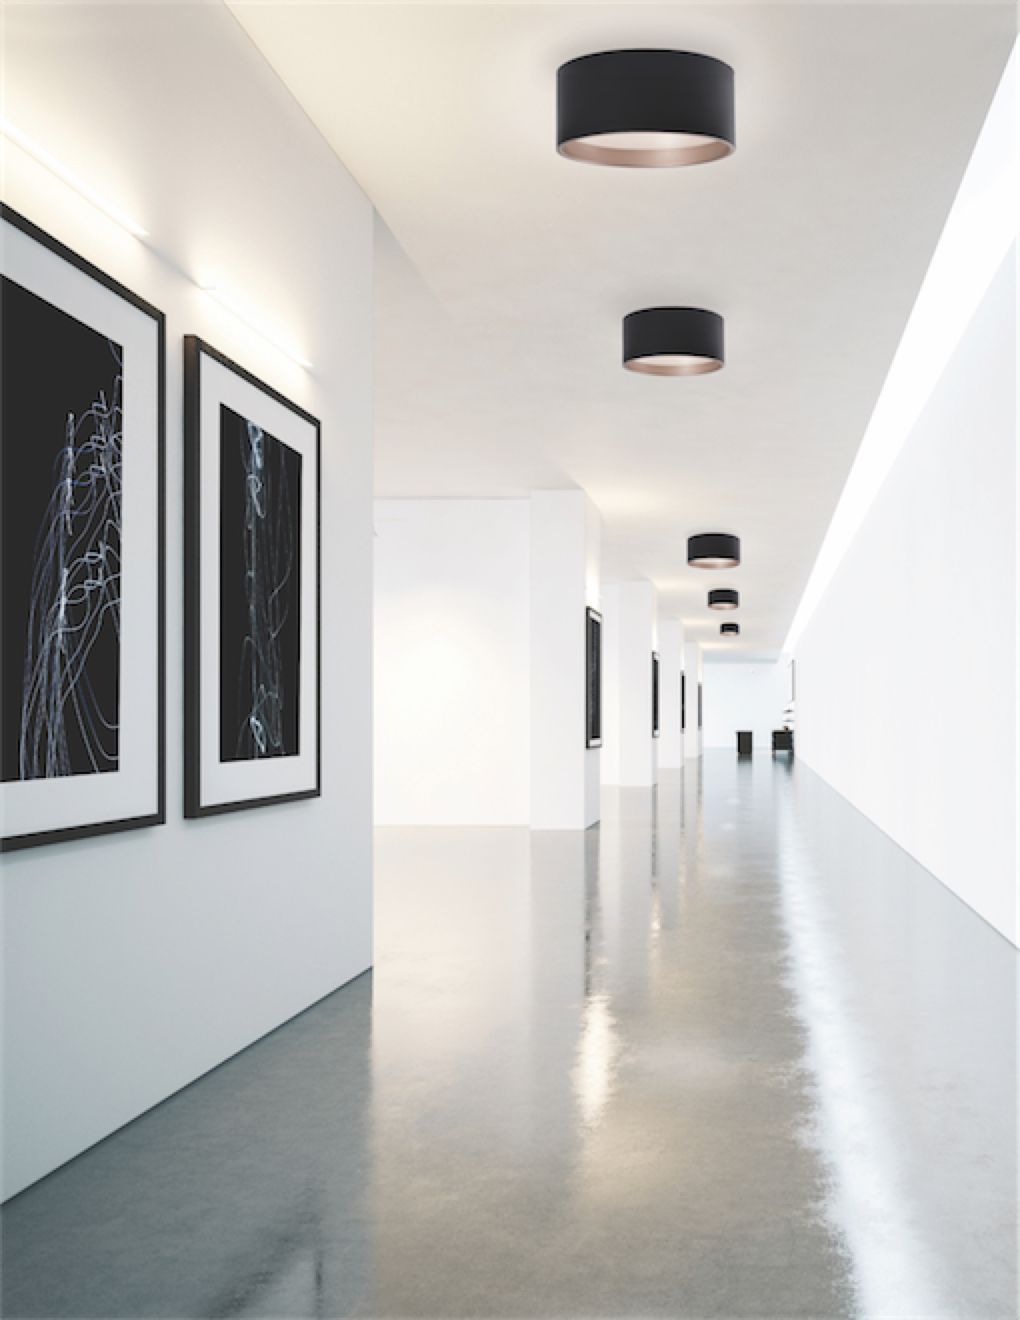 Luminaire encastré moderne MOUSINNI Kuzco fm11418-bk au plafond dans un couloir blanc avec tableaux style galerie d'art